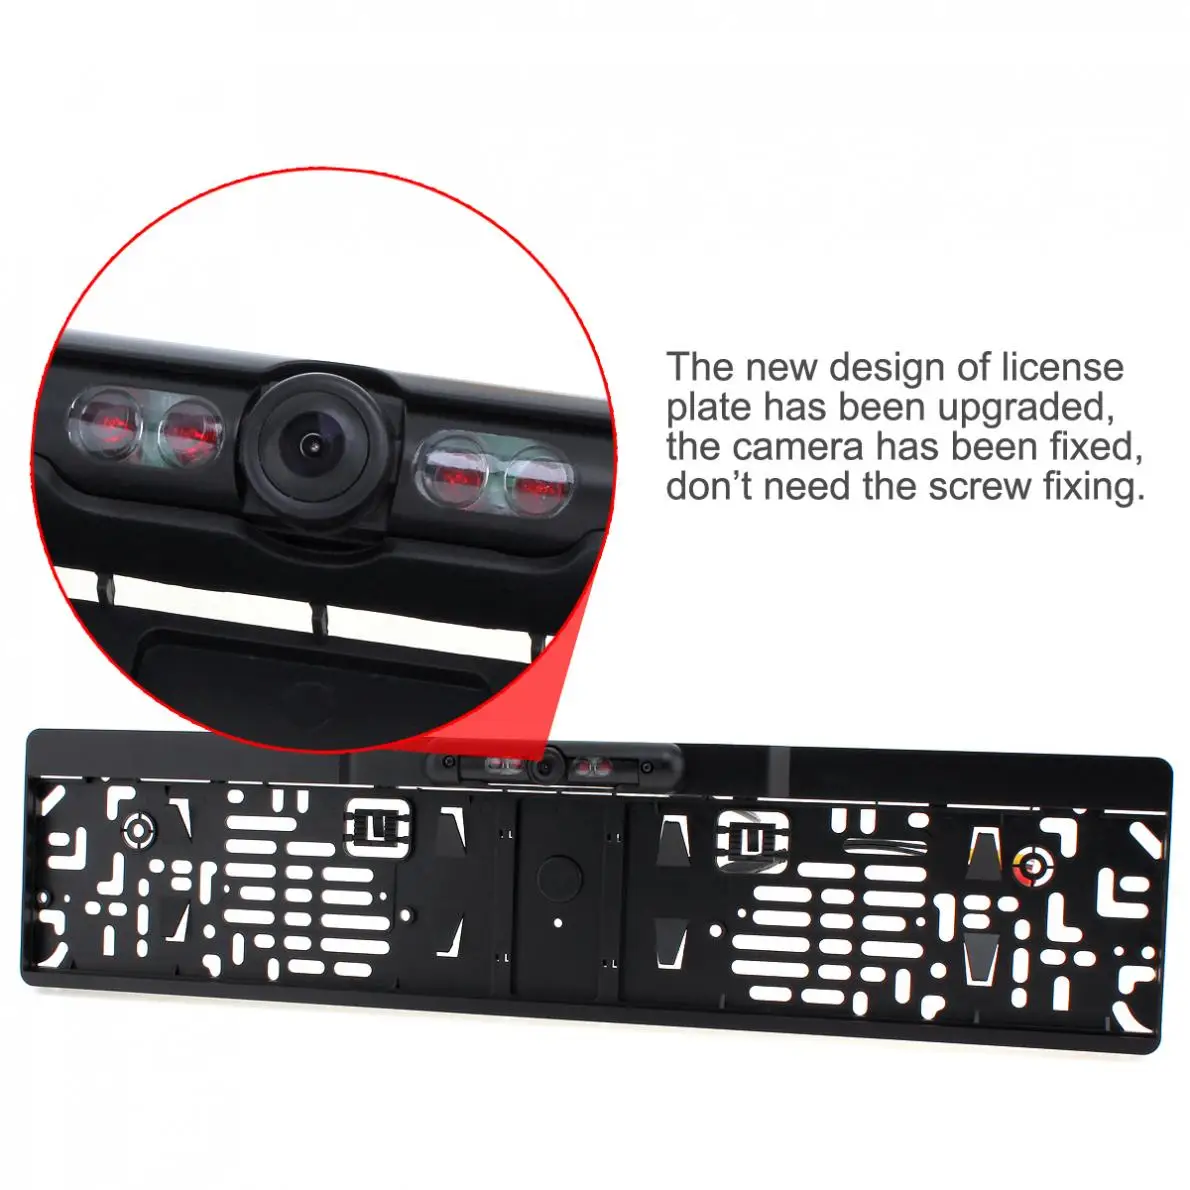 ИК ночного видения ЕС рамка номерного знака автомобиля заднего вида резервная камера+ 2,4G беспроводной цветной видео передатчик и приемник